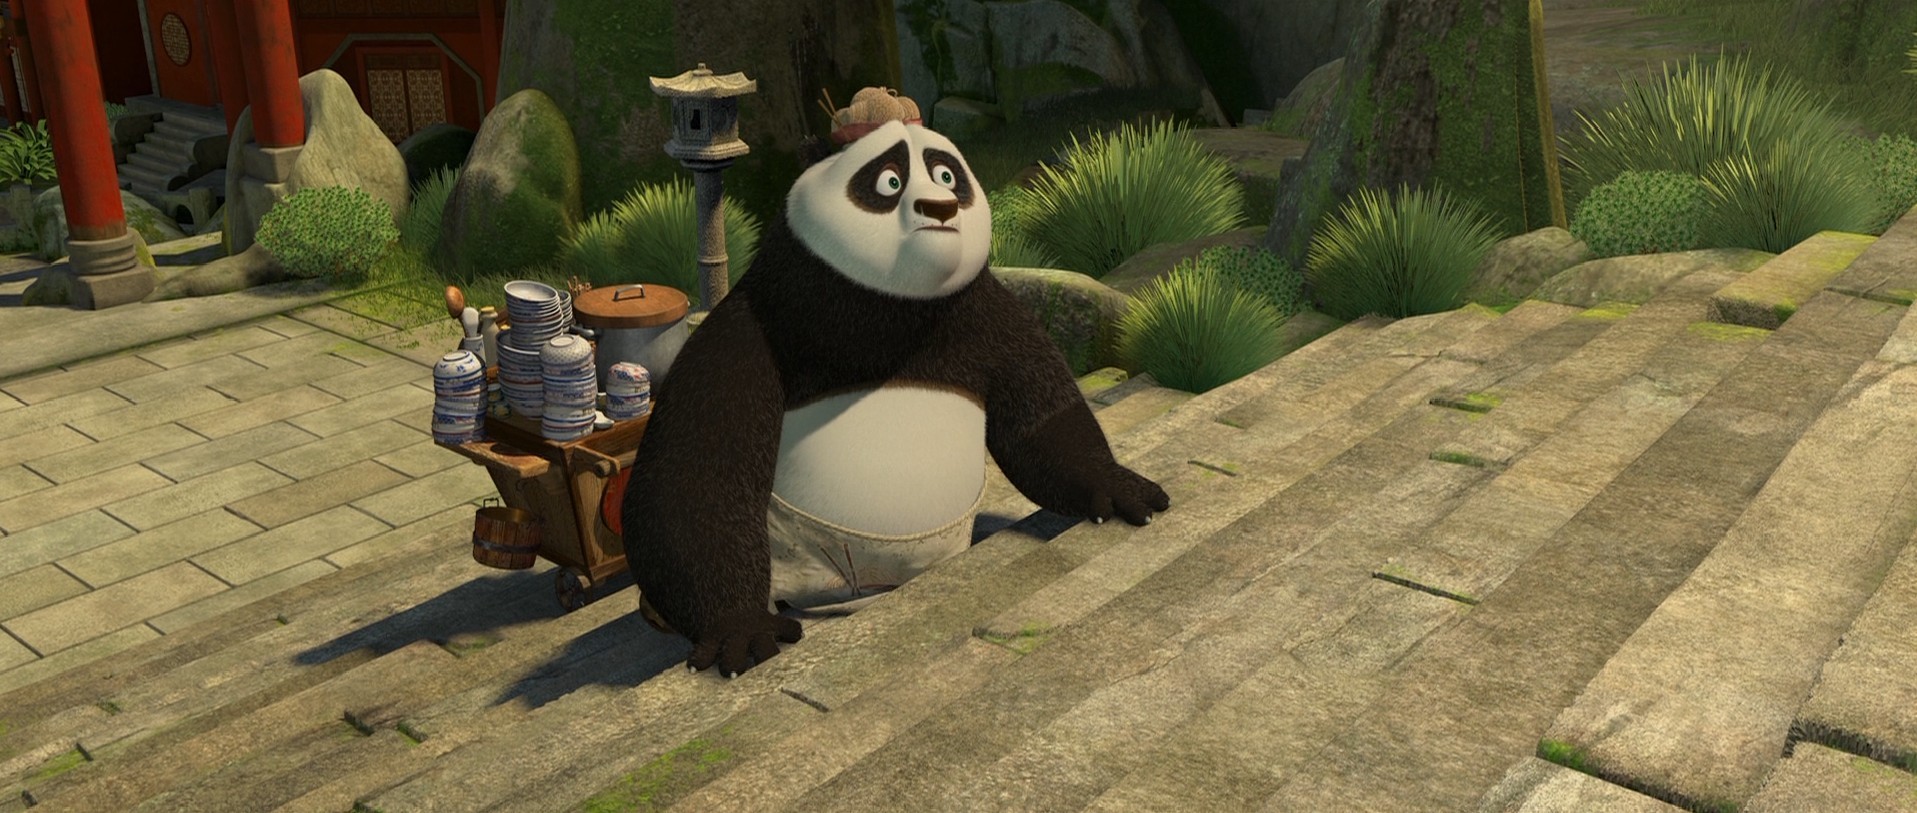 早知道能下载到这么高清的《功夫熊猫2》电影,还花钱进个什么影院呐